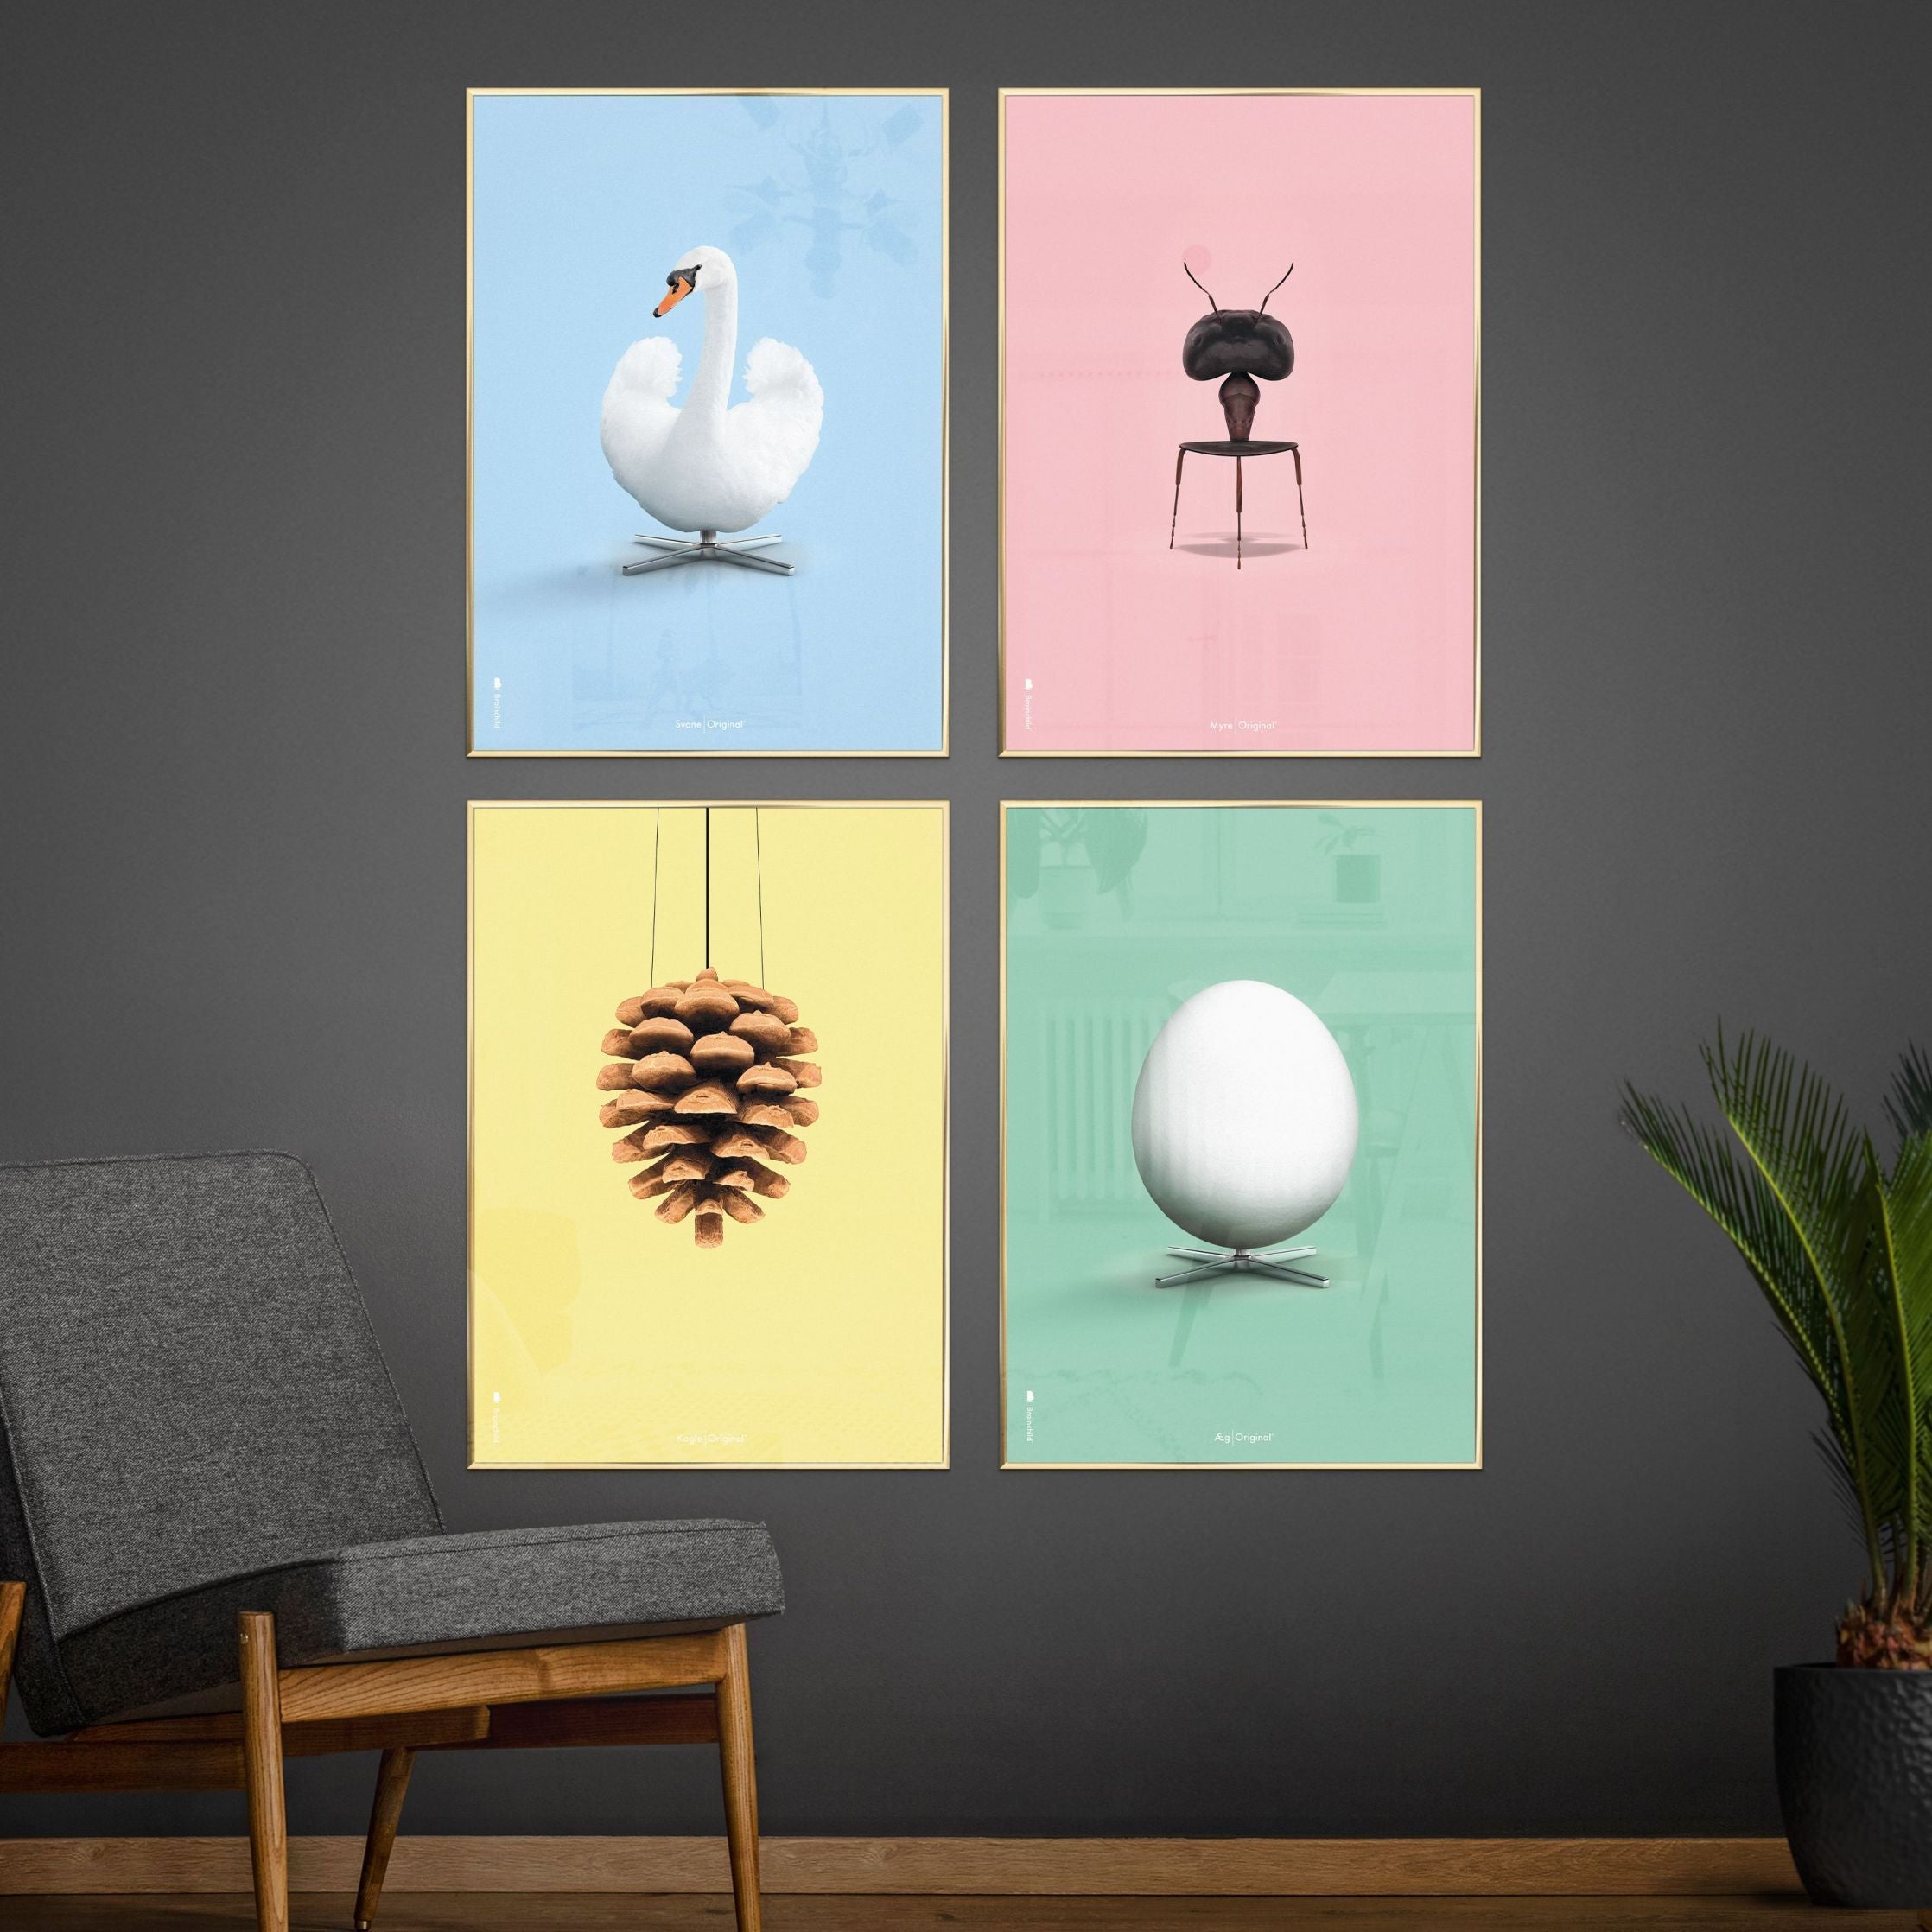 Klasický plakát s labutí mosazi, mosazný barevný rám A5, světle modré pozadí